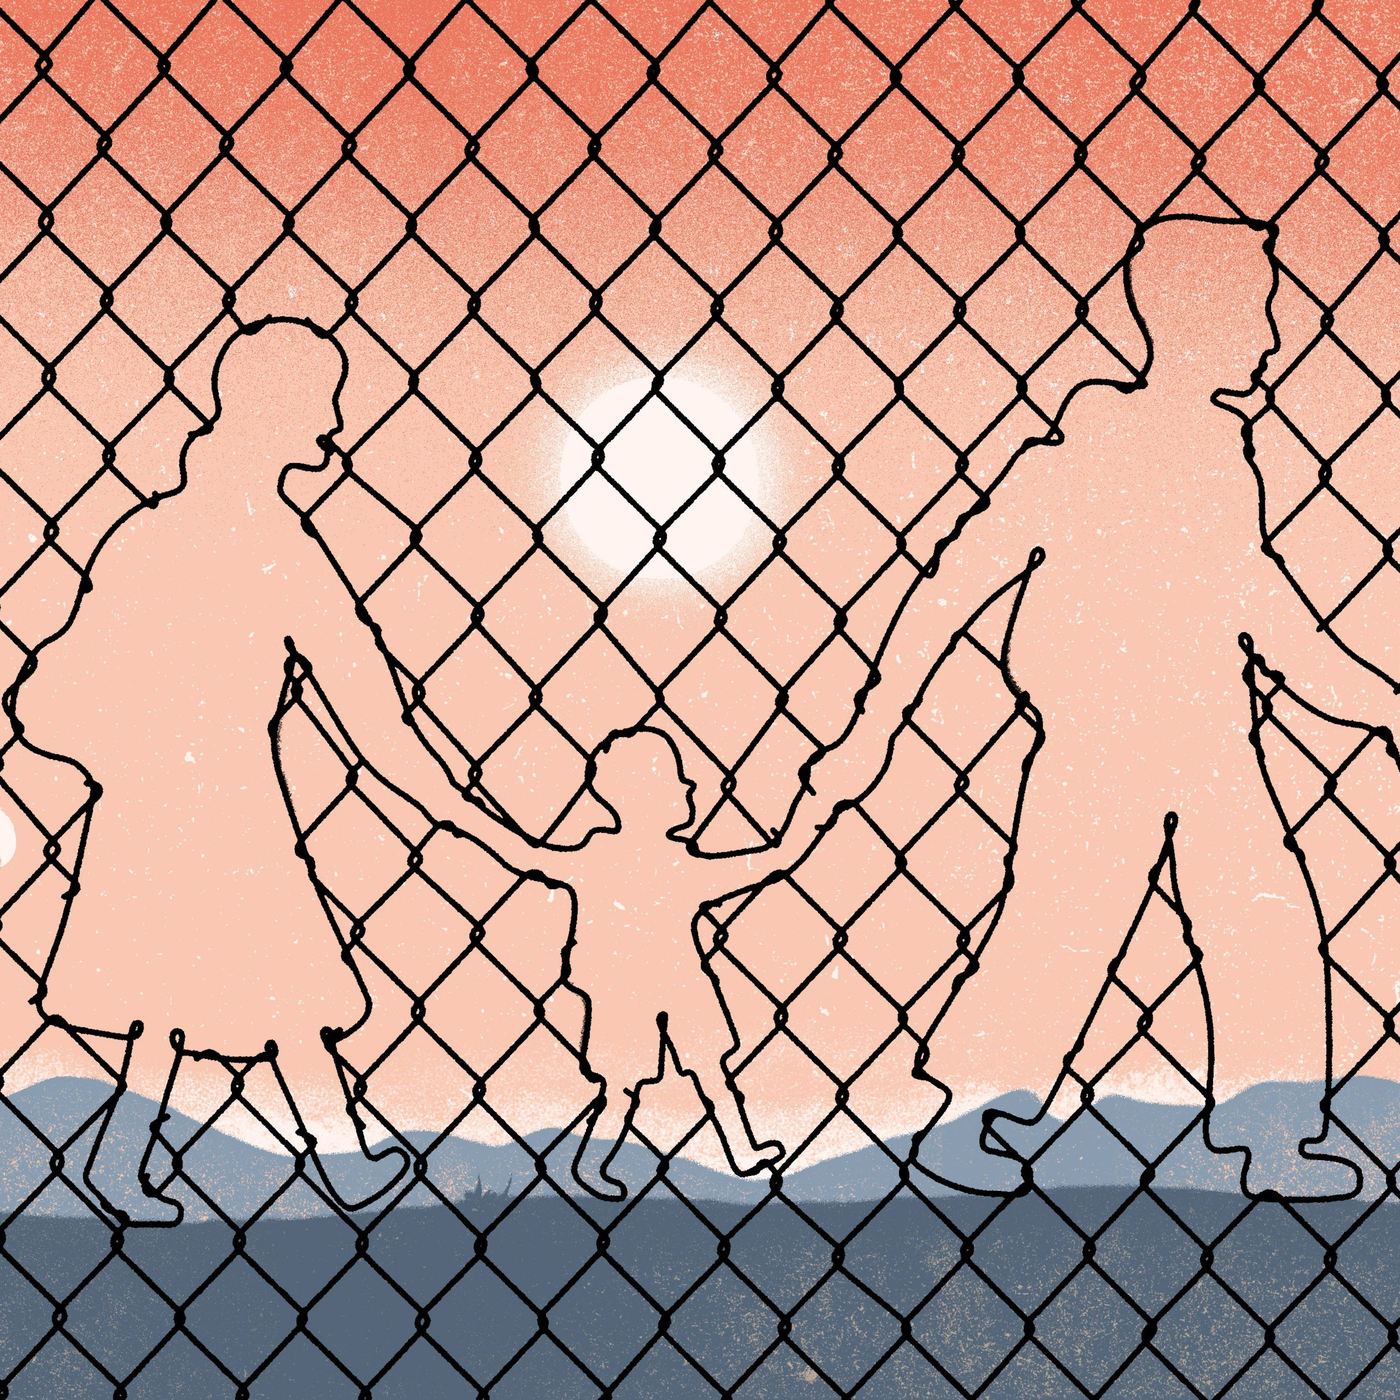 The Crisis at the Border